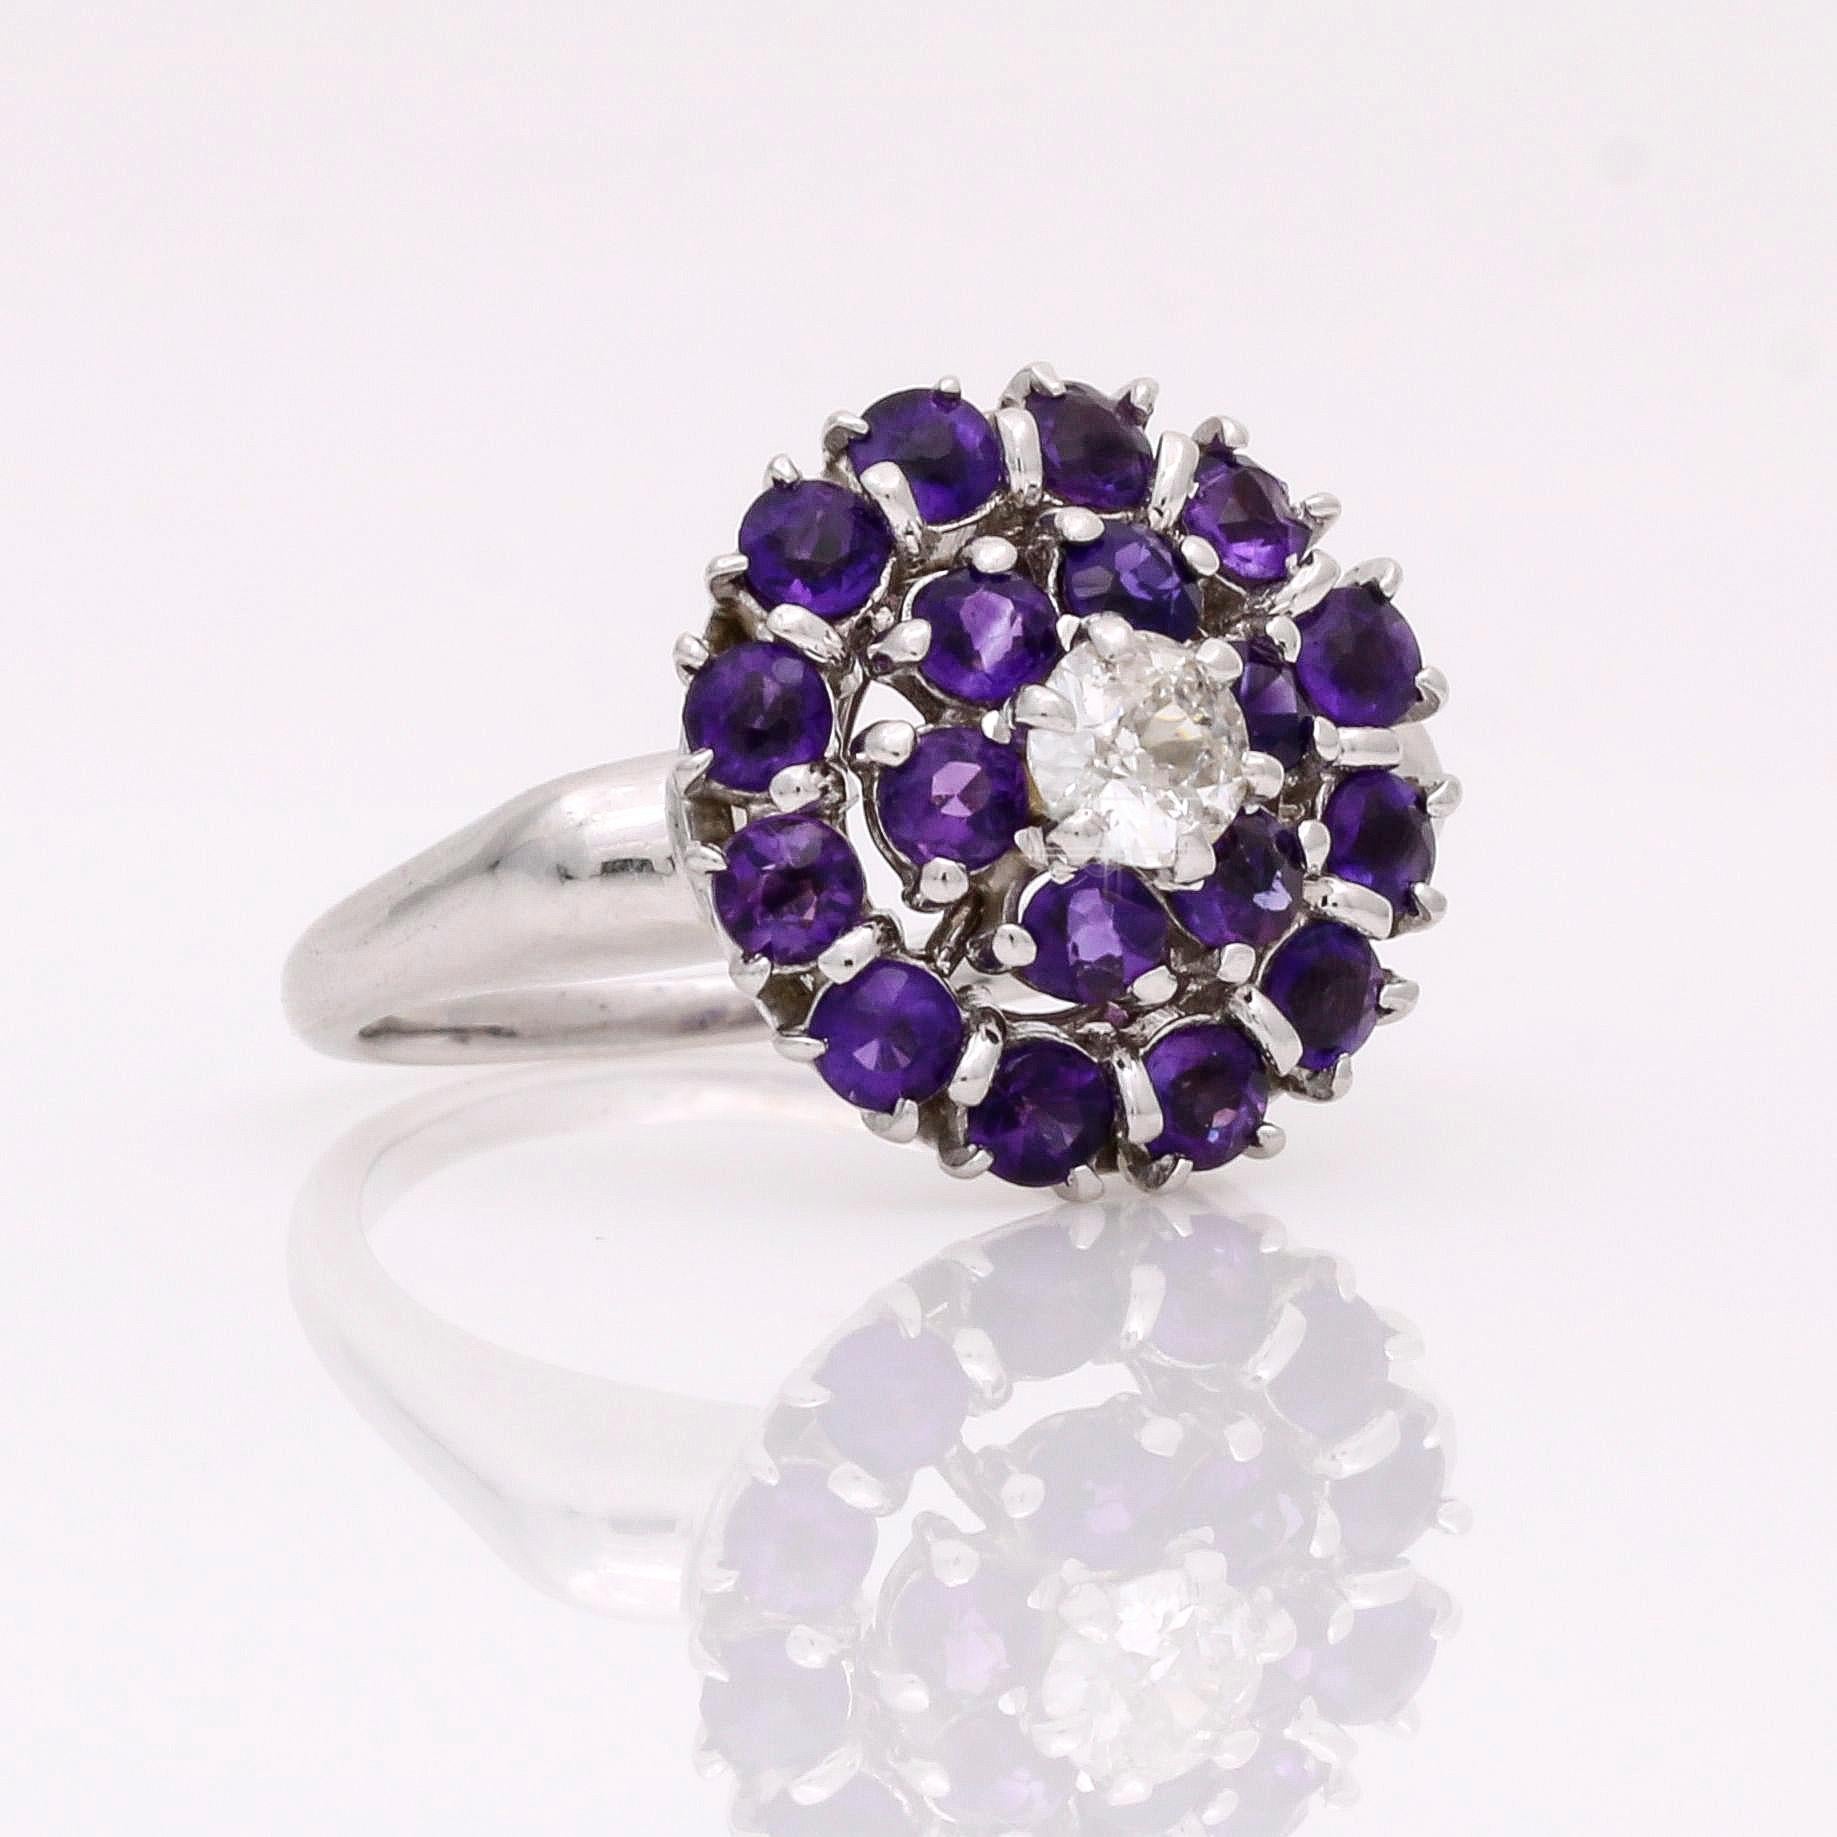 Dieser Vintage-Ring mit Diamanten und Edelsteinen ist ein zeitloses, glamouröses Schmuckstück. Mit einem Diamanten in der Mitte, umgeben von zwei Reihen rund geschliffener Amethysten, ist dieser einzigartige Ring ein echter Blickfang für Ihren Look.